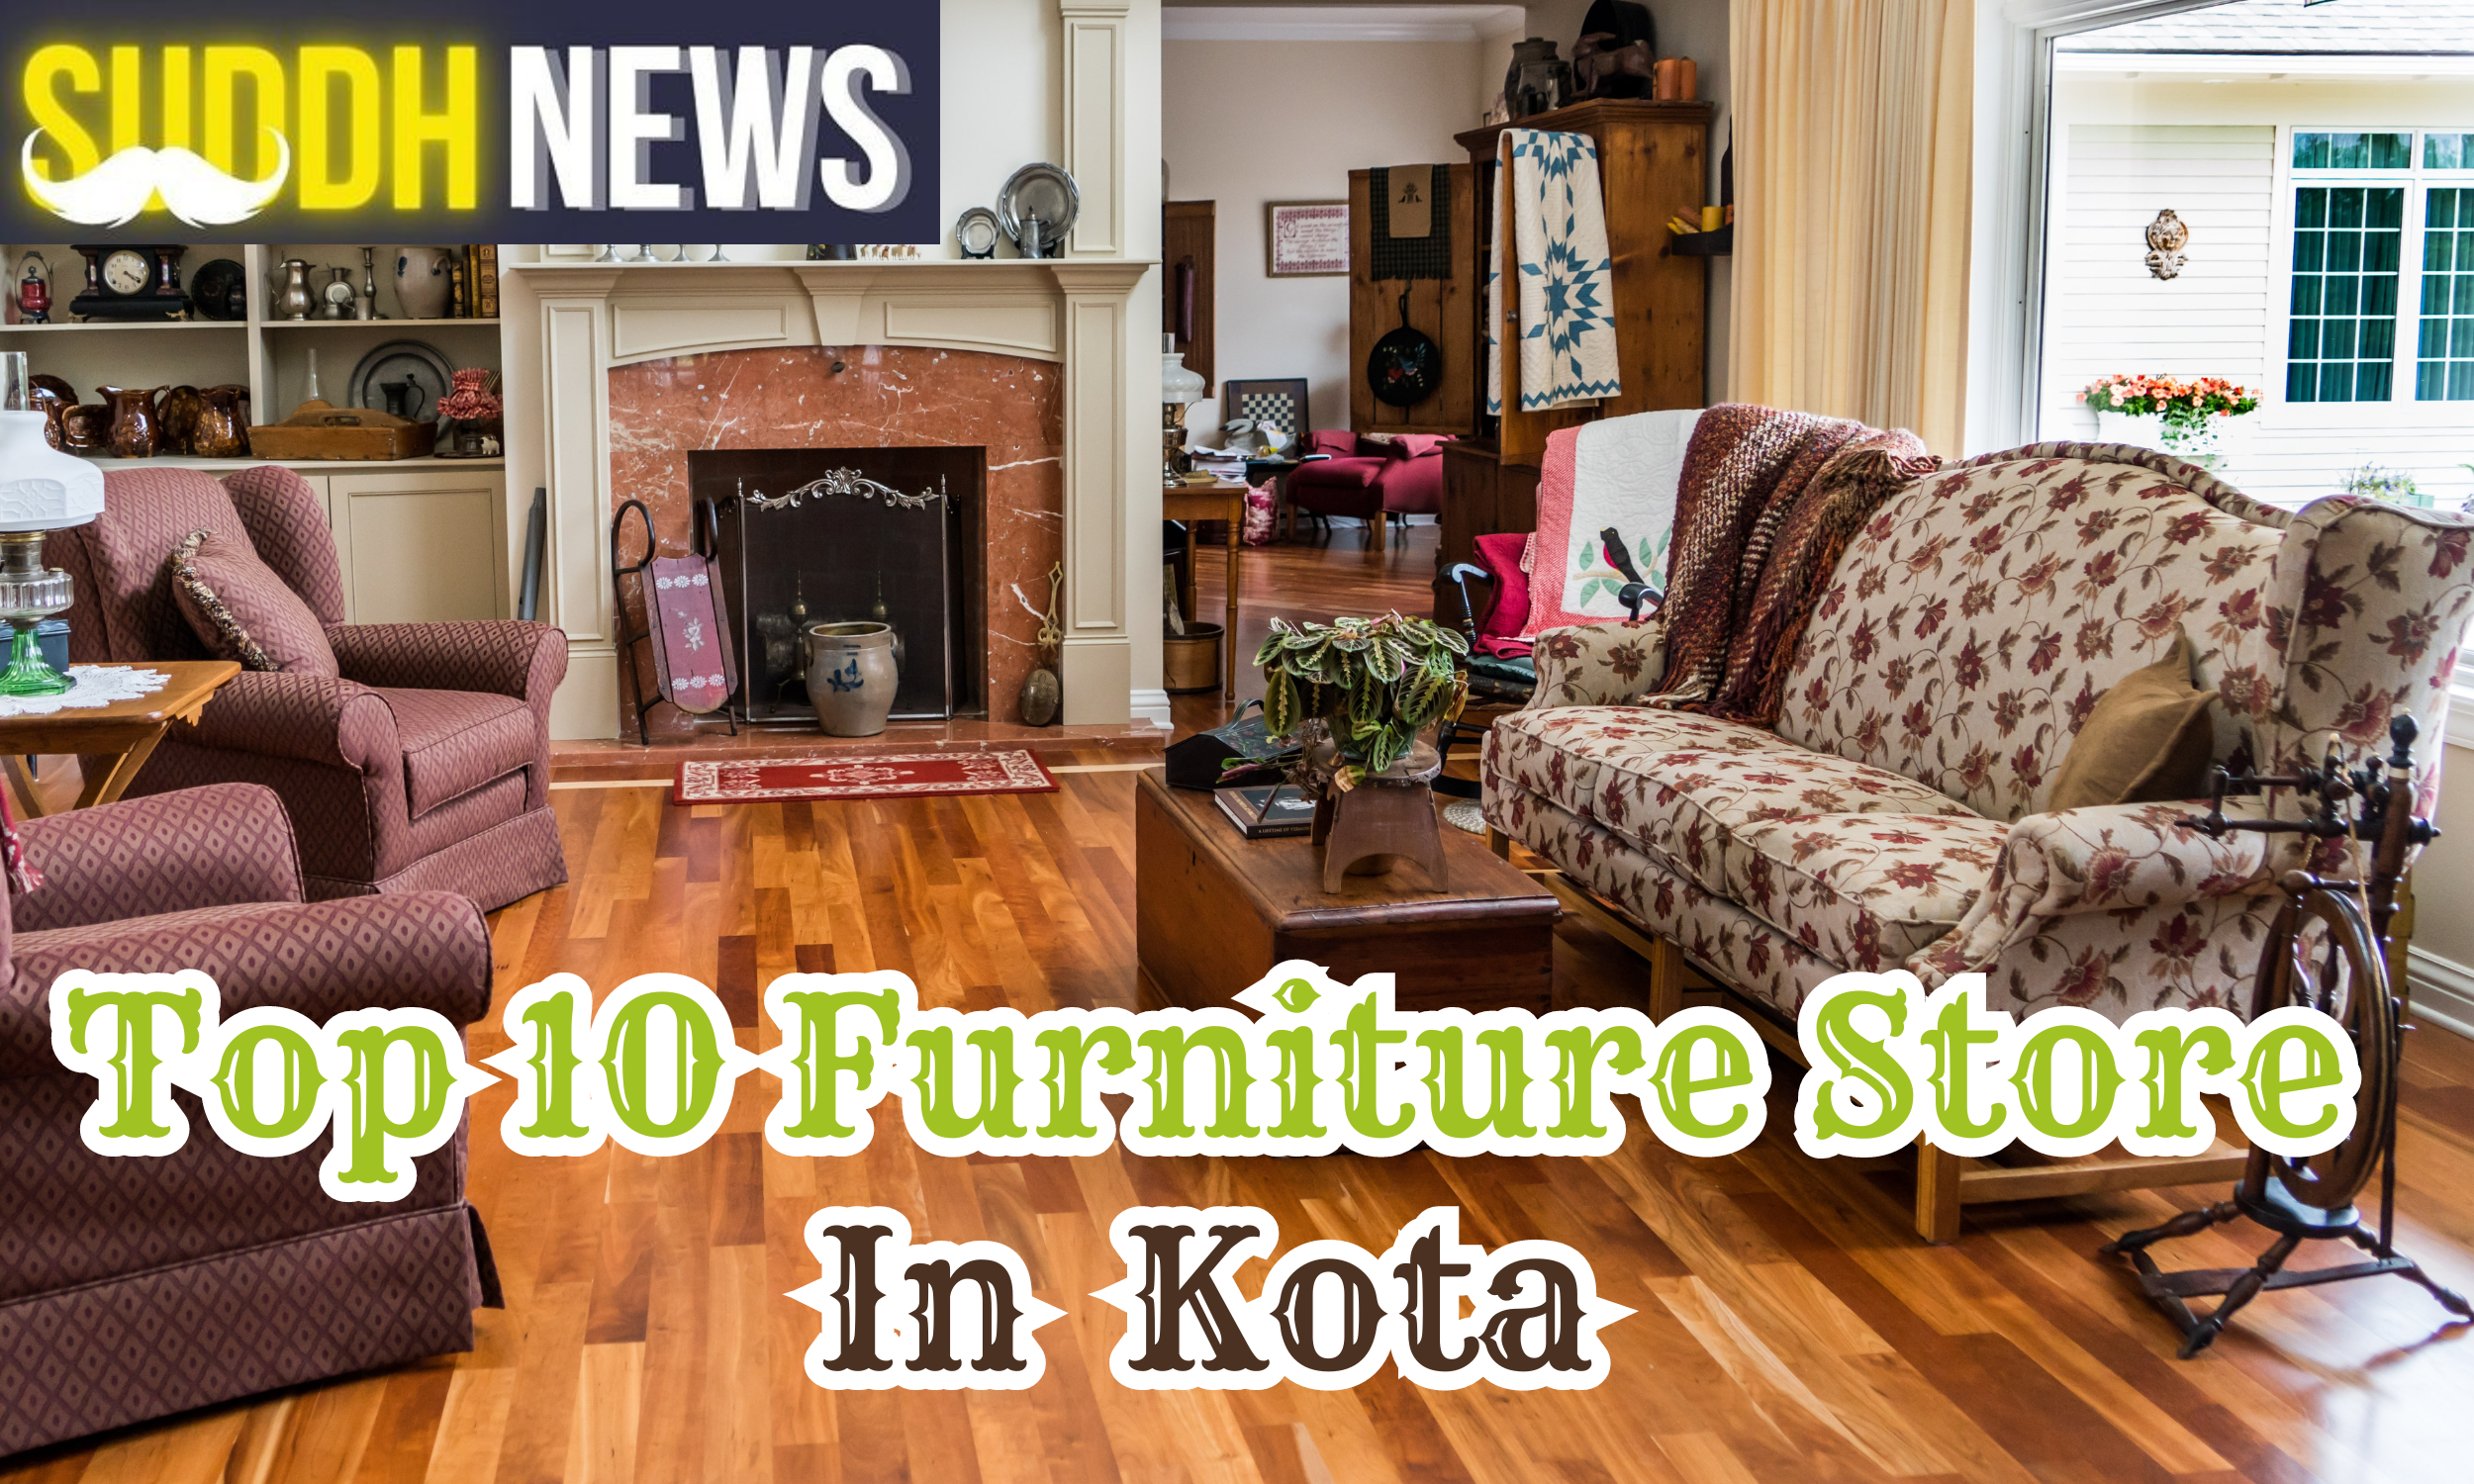 Top 10 Furniture Store In Kota